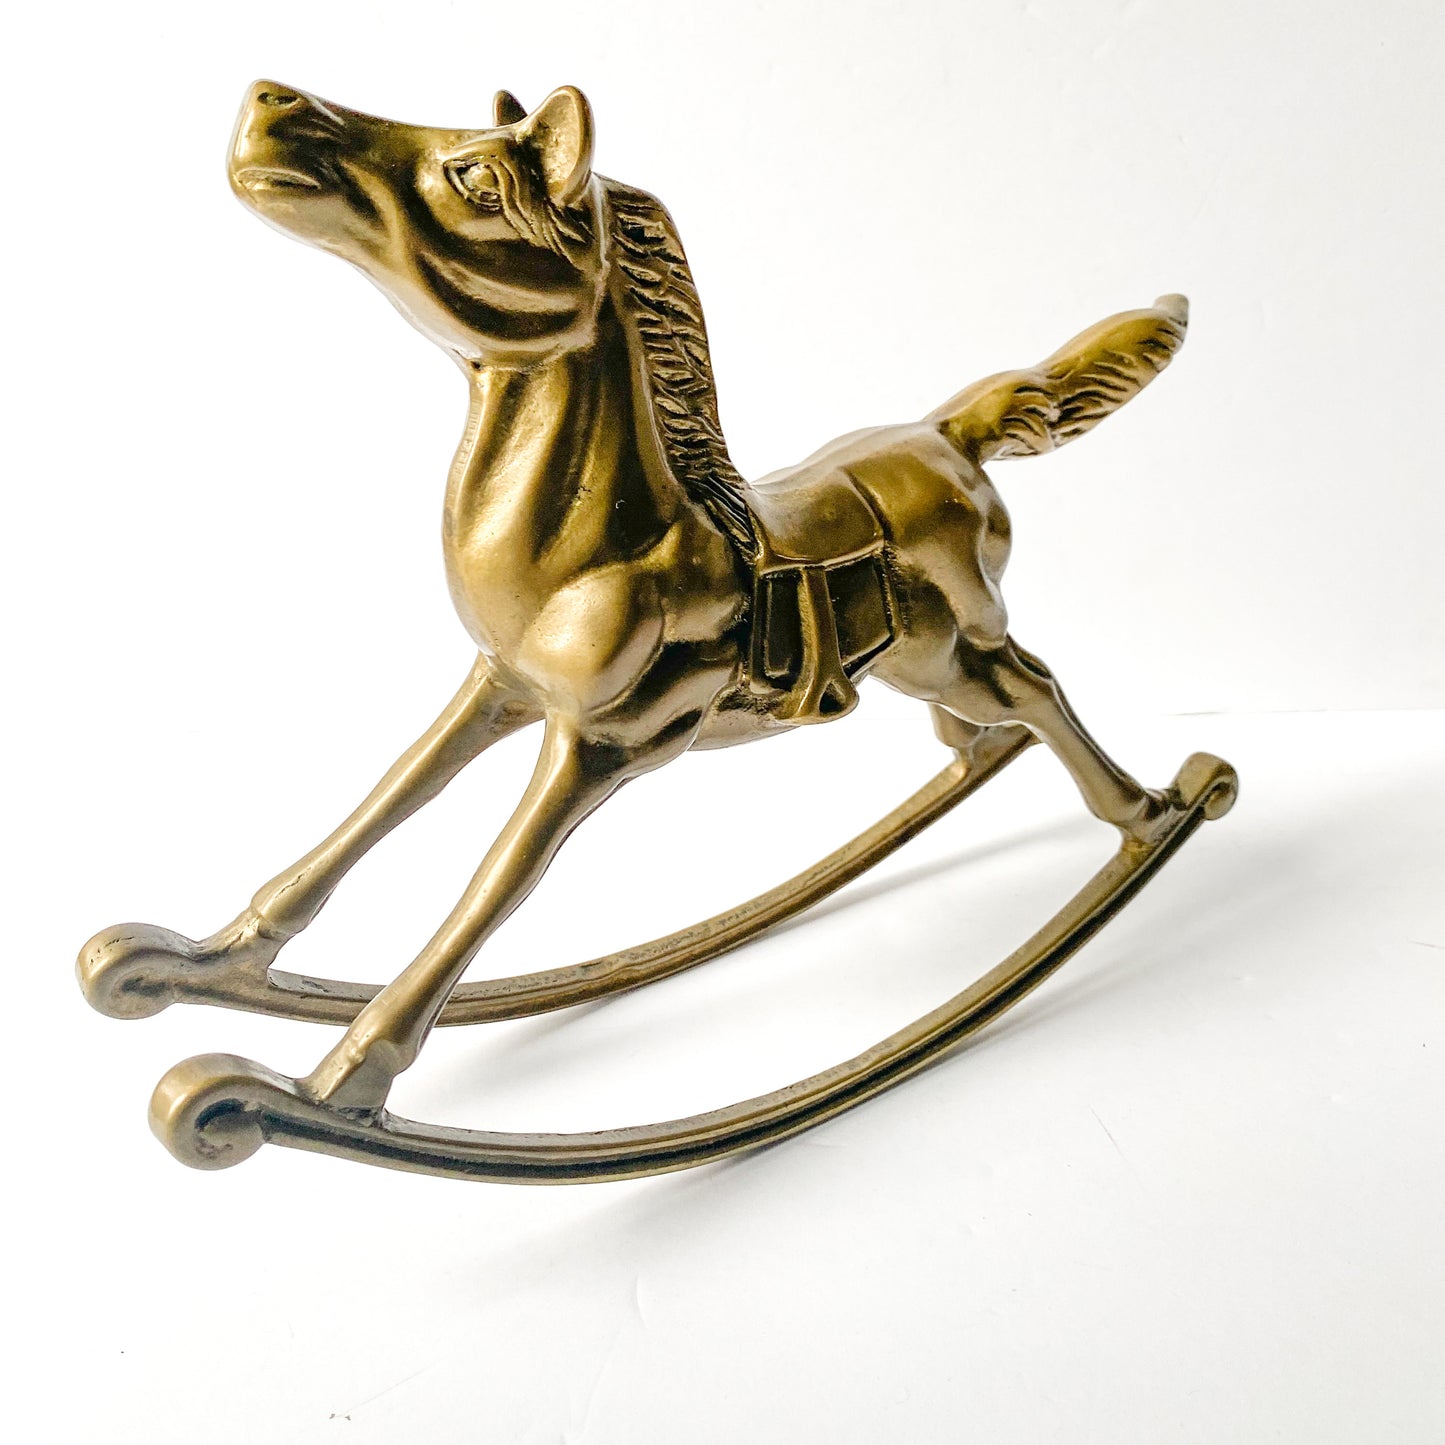 Vintage brass rocking horse sculpture